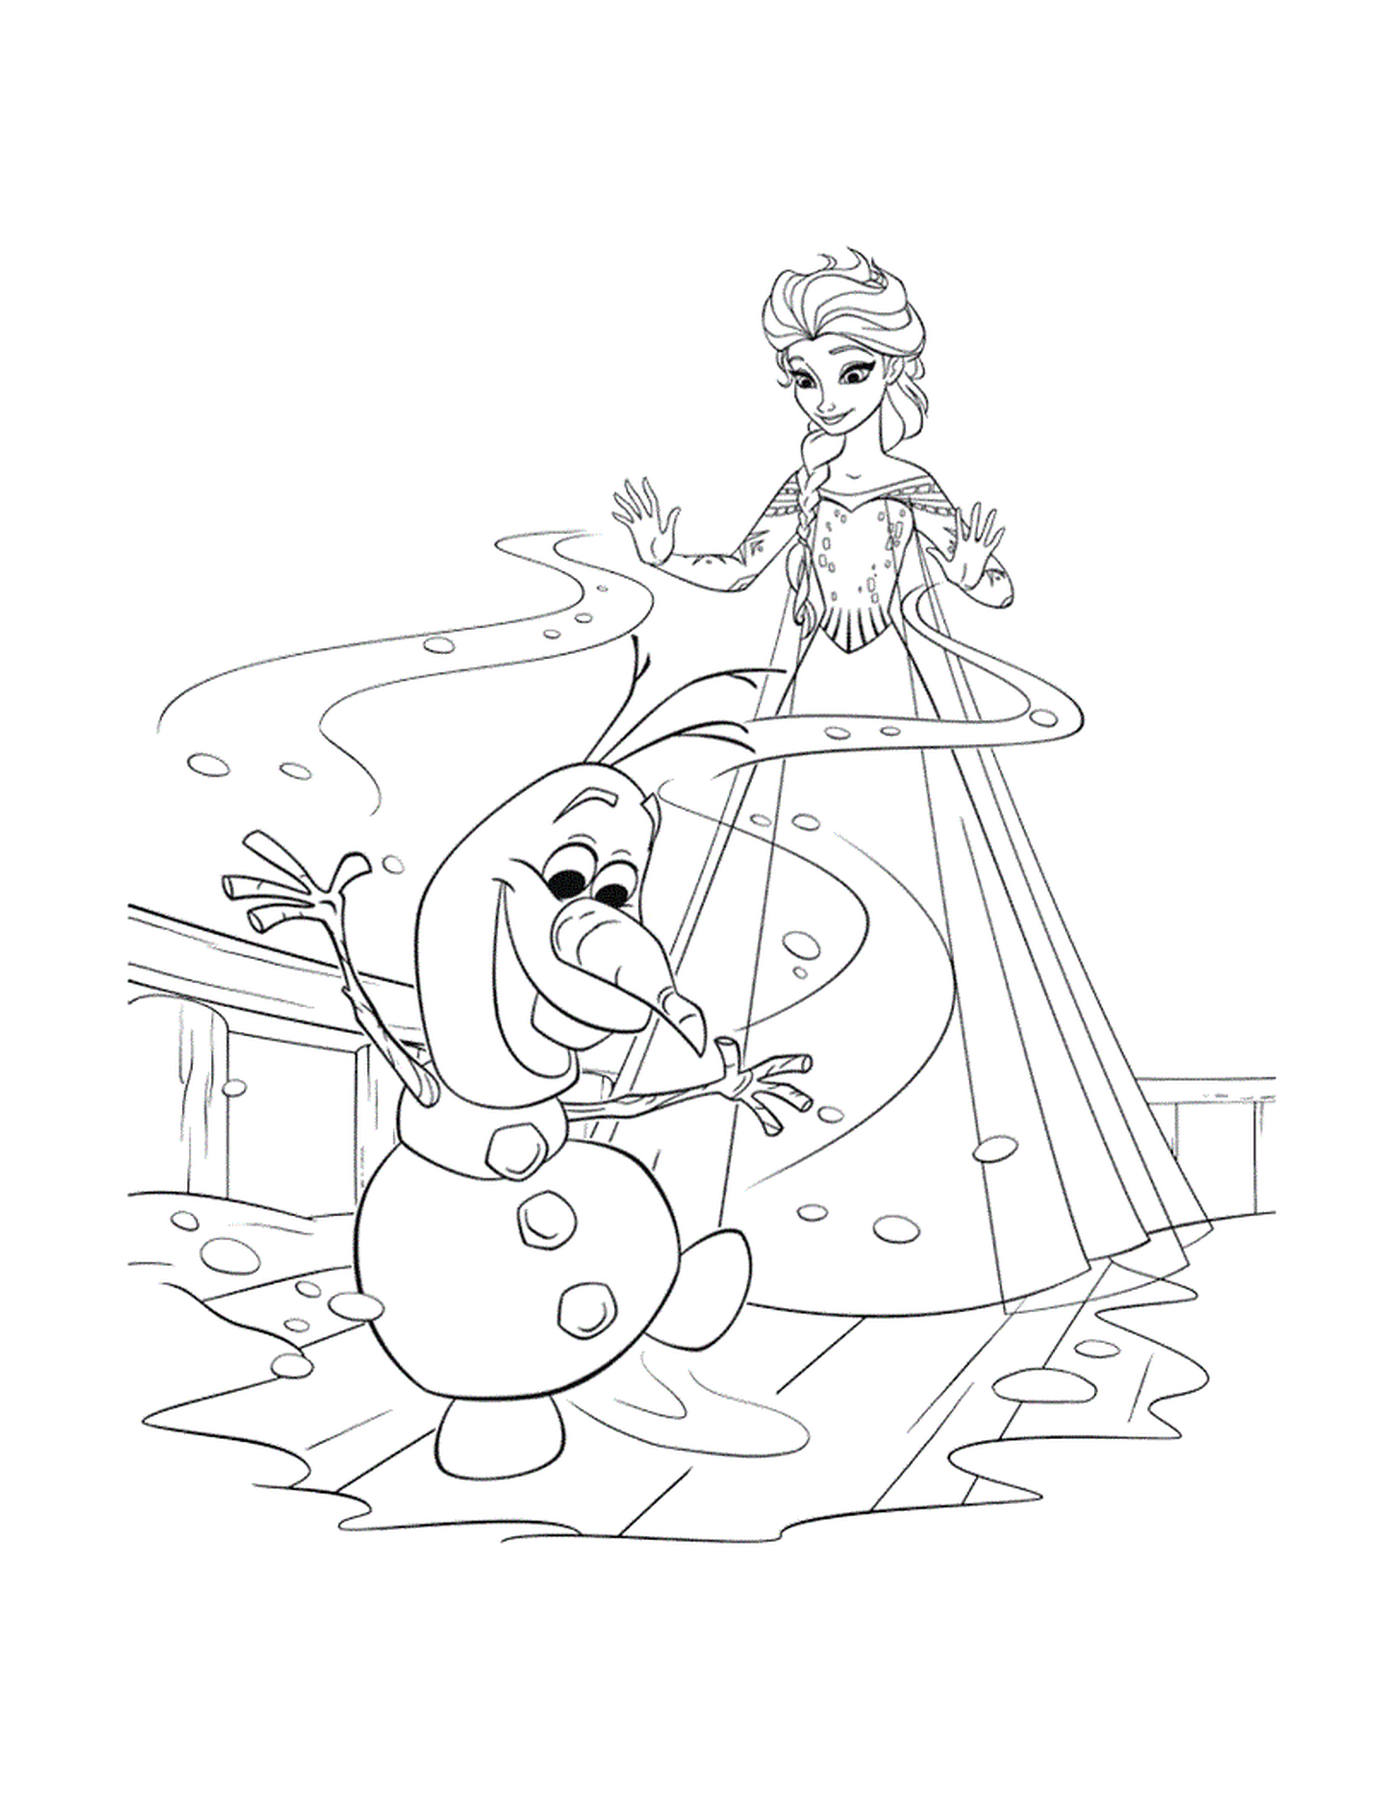  Complices de Elsa y Olaf 